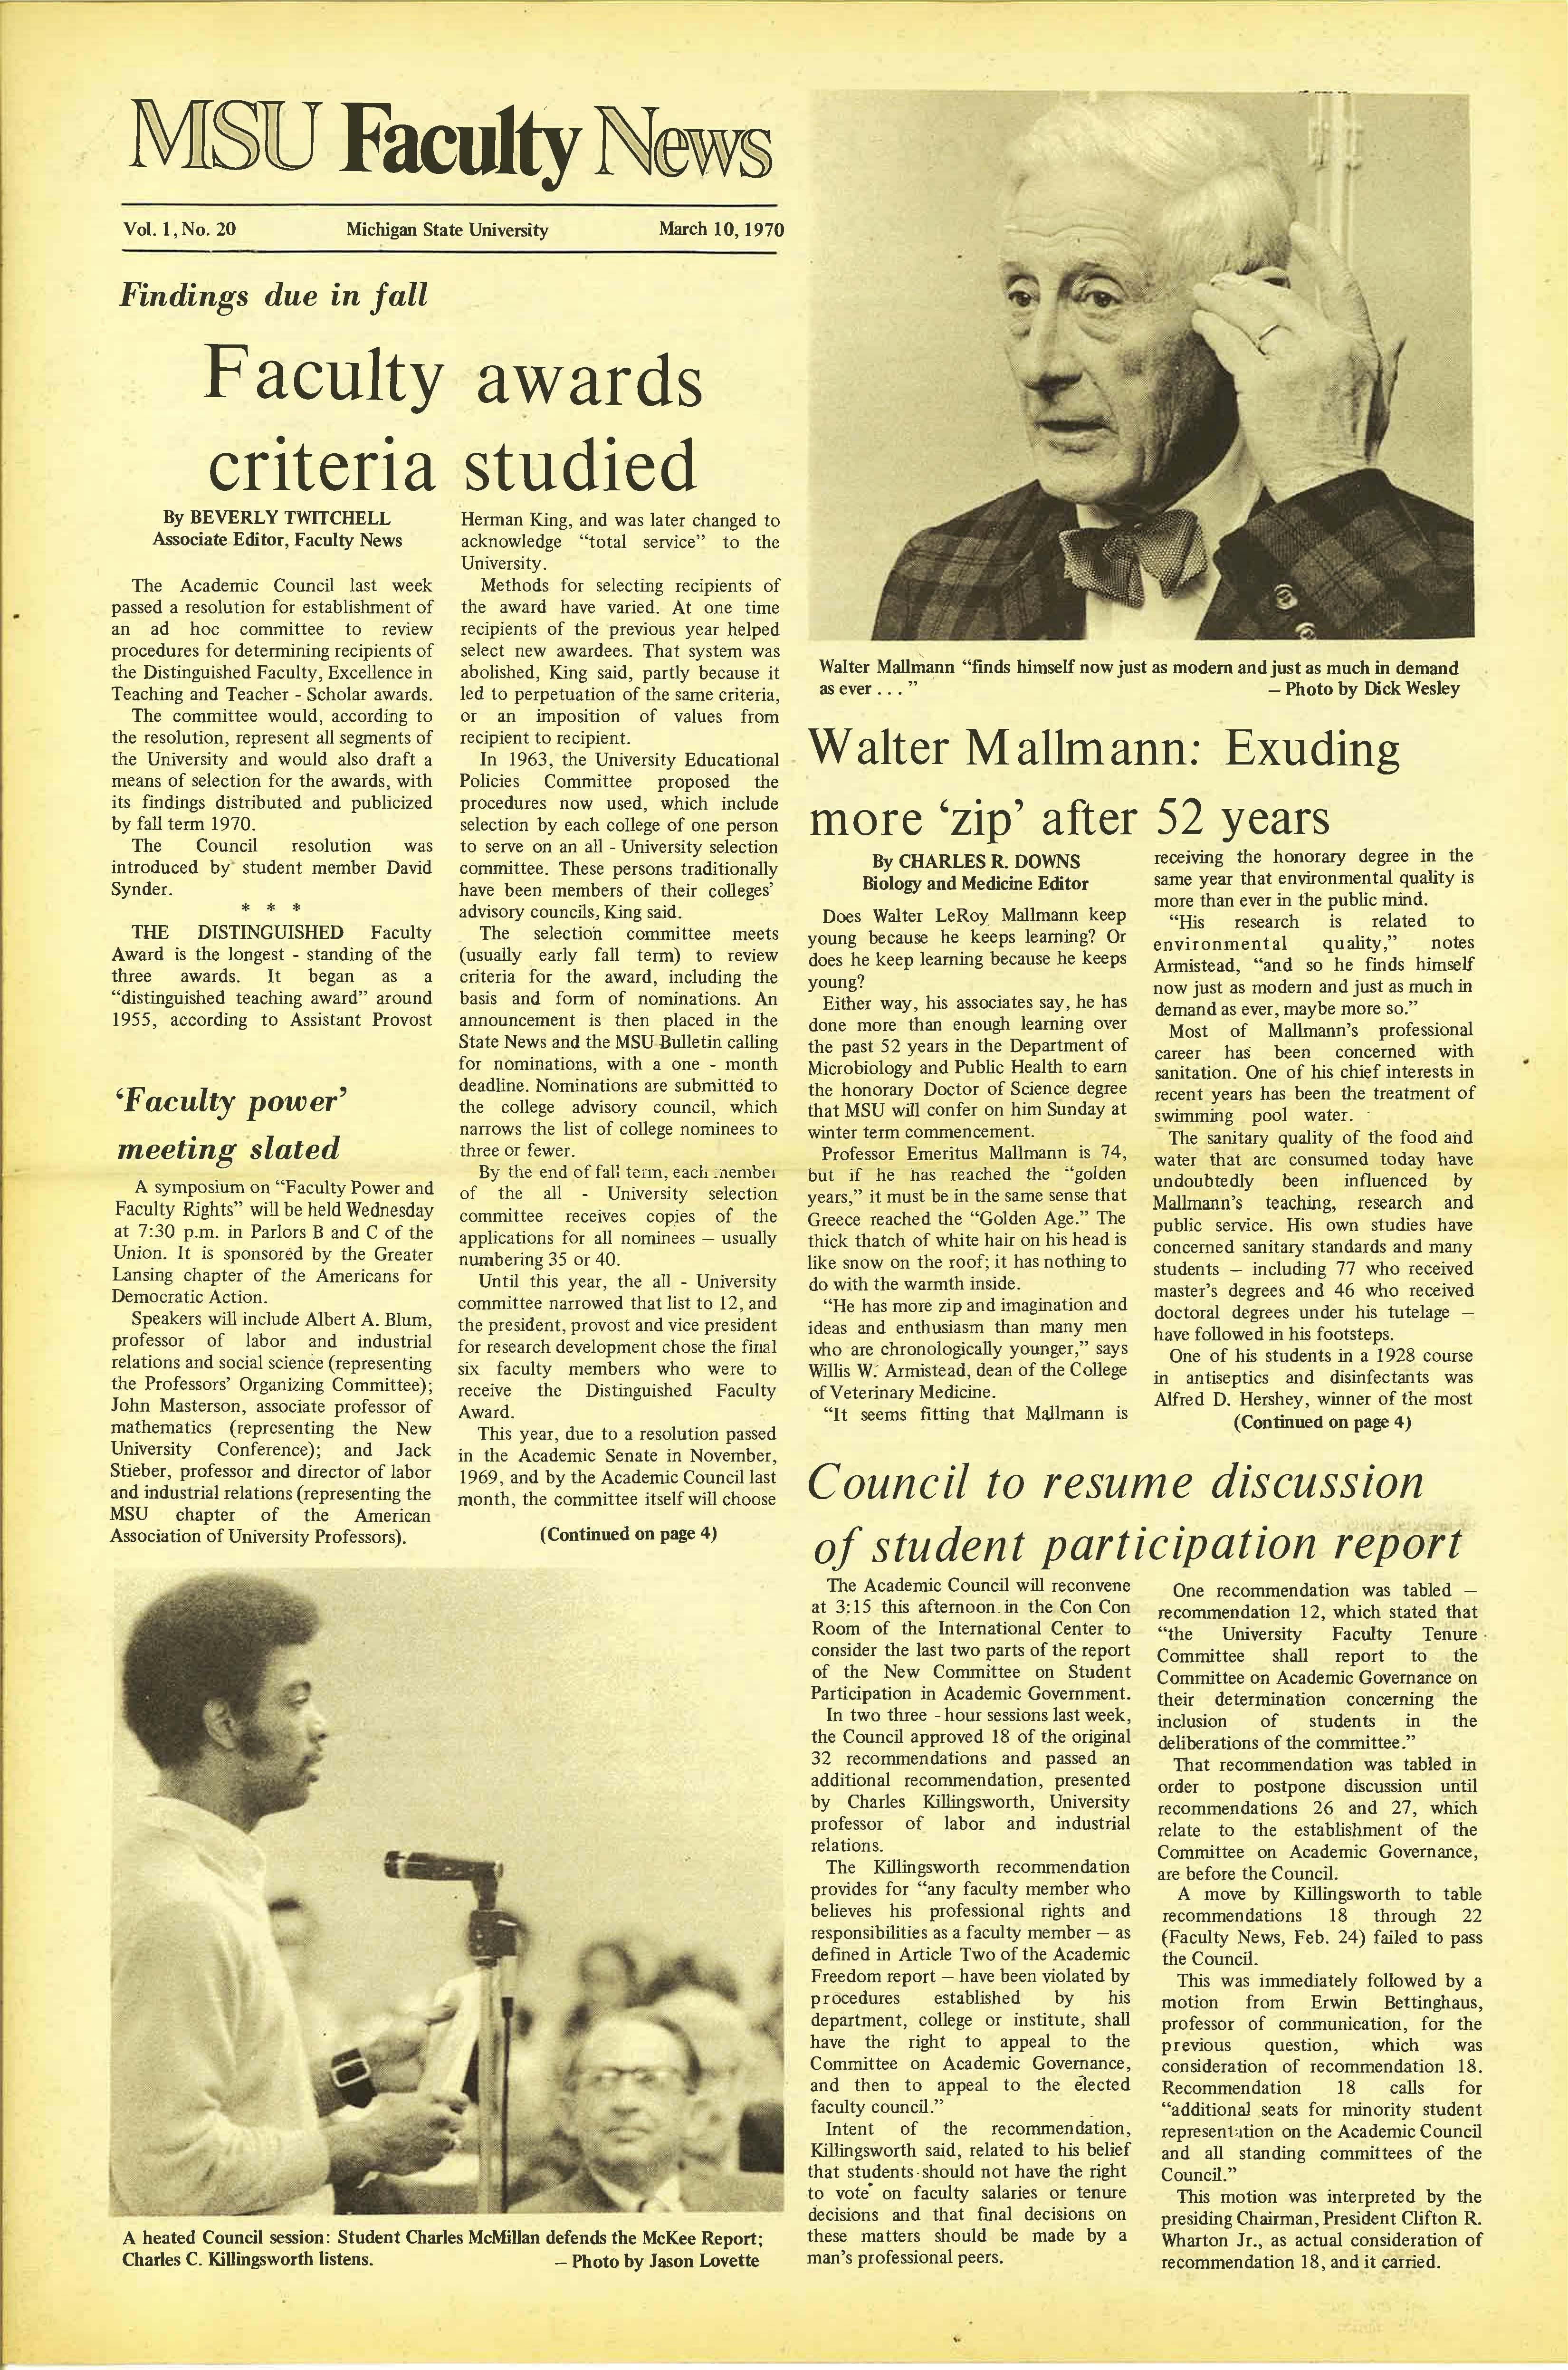 MSU News Bulletin, Vol. 1, No. 31, June 30, 1970